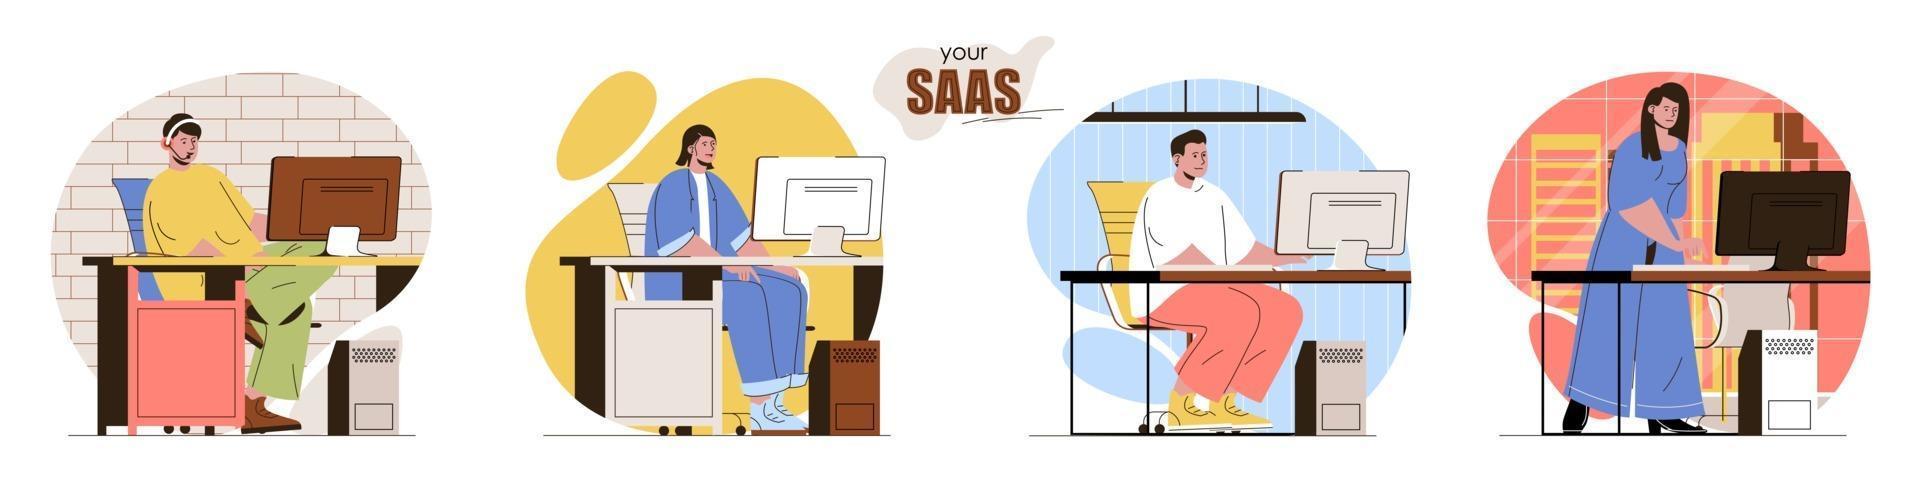 Your SaaS concept scenes set vector